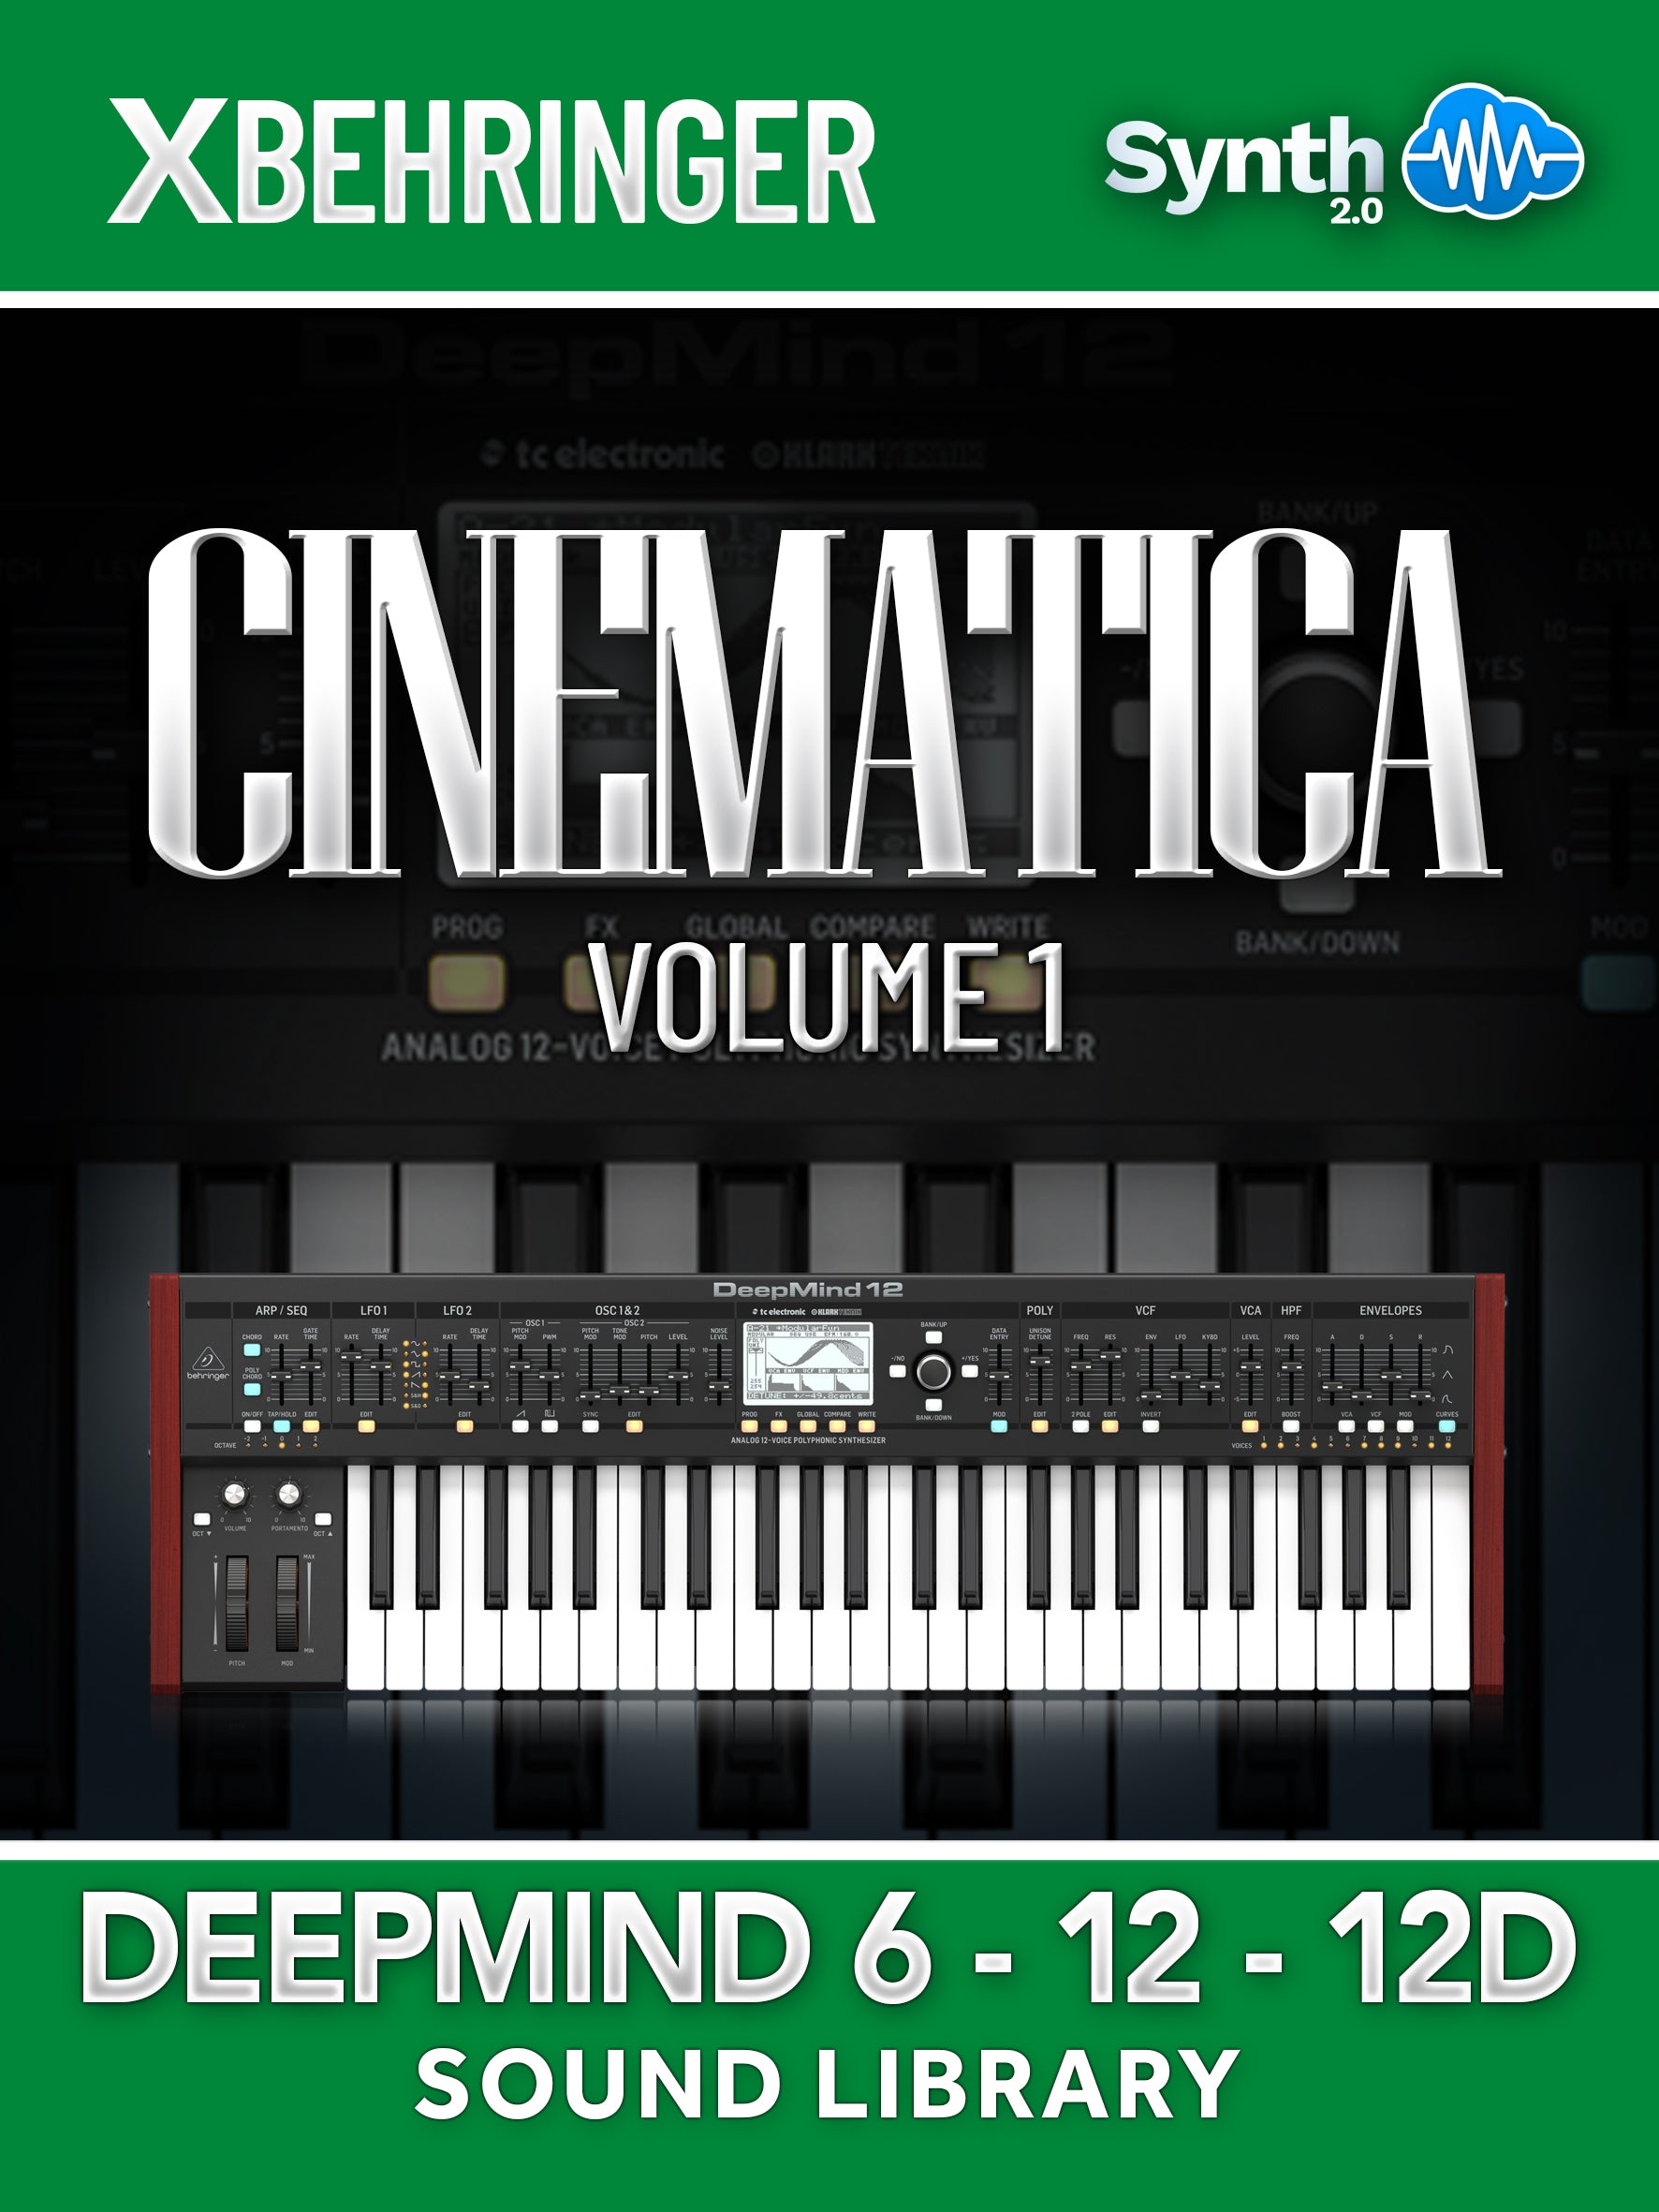 LFO002 - Cinematica V1 - Behringer Deepmind 6 / 12 / 12D ( 64 presets )